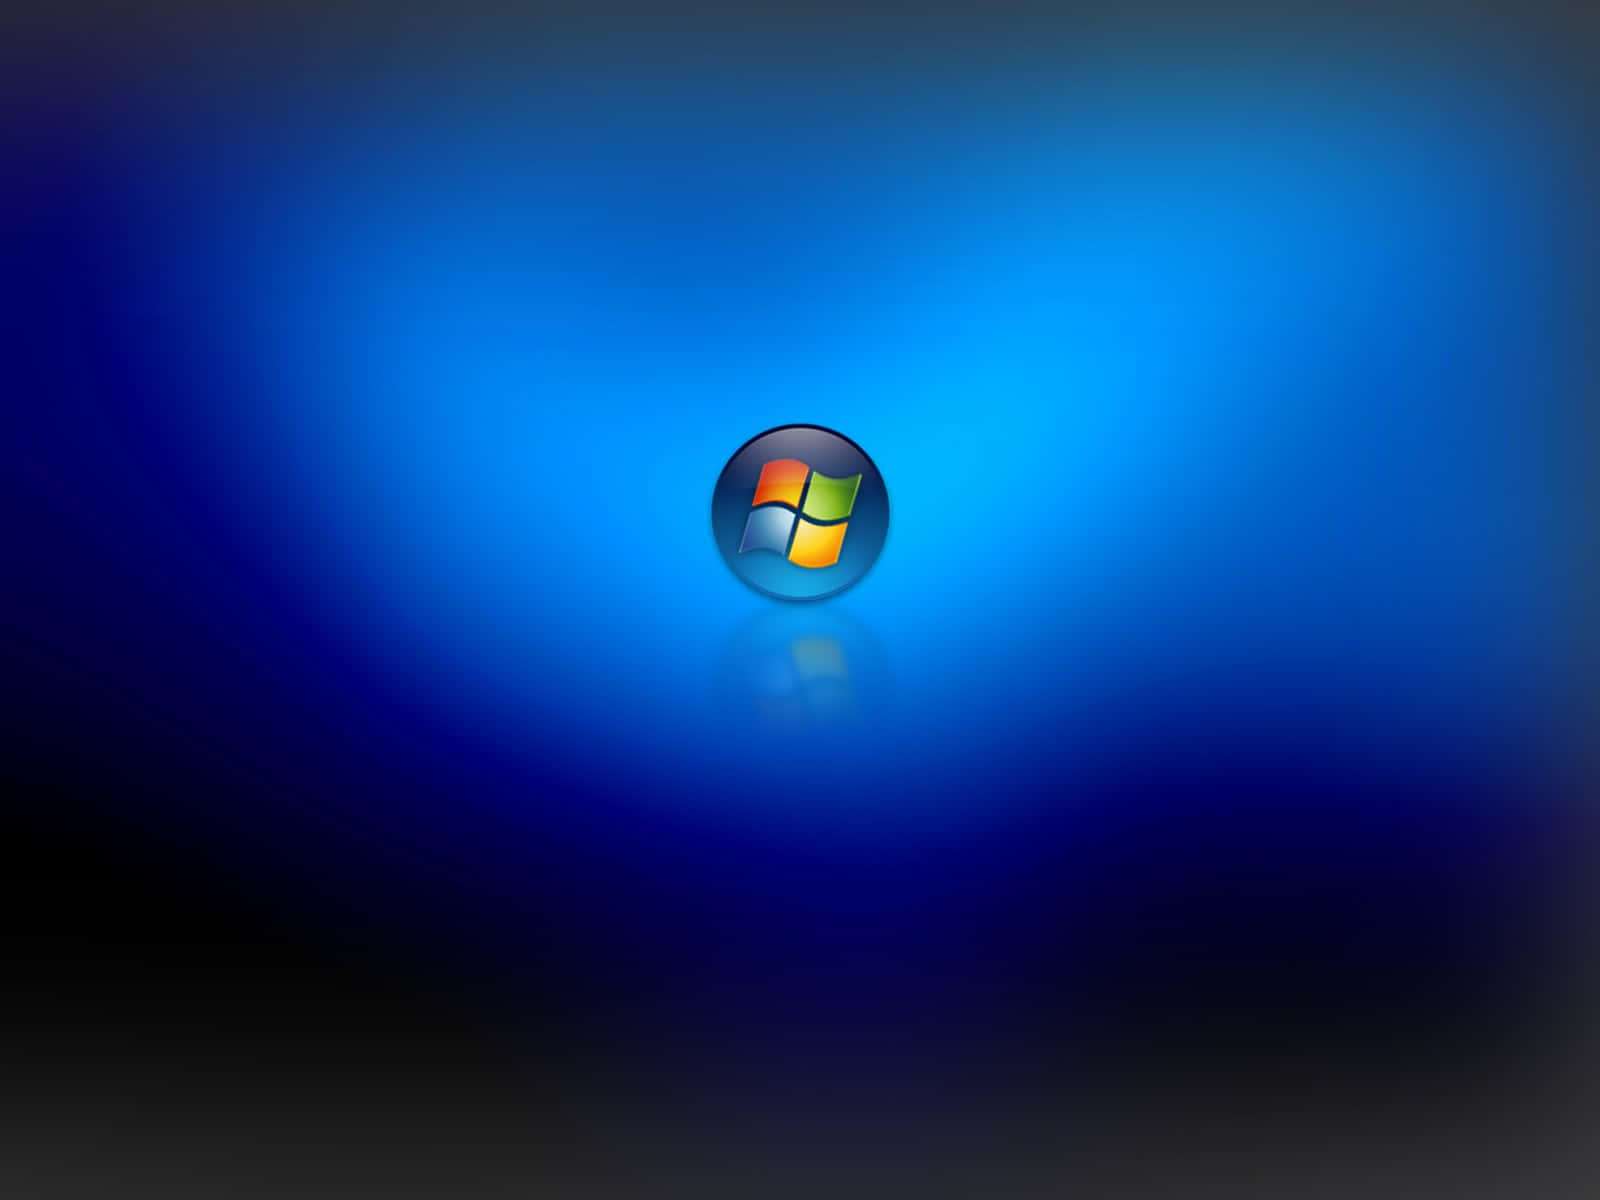 Windows7-logo På En Blå Baggrund.